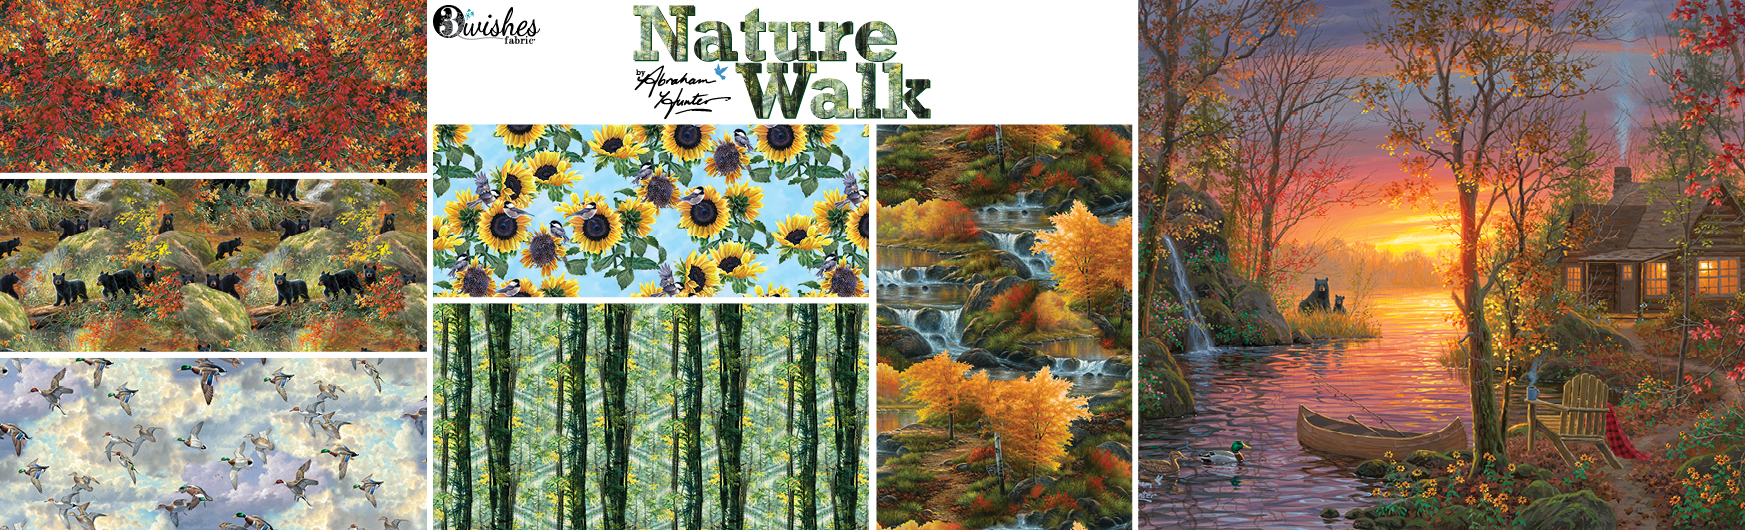 3-nature-walk/